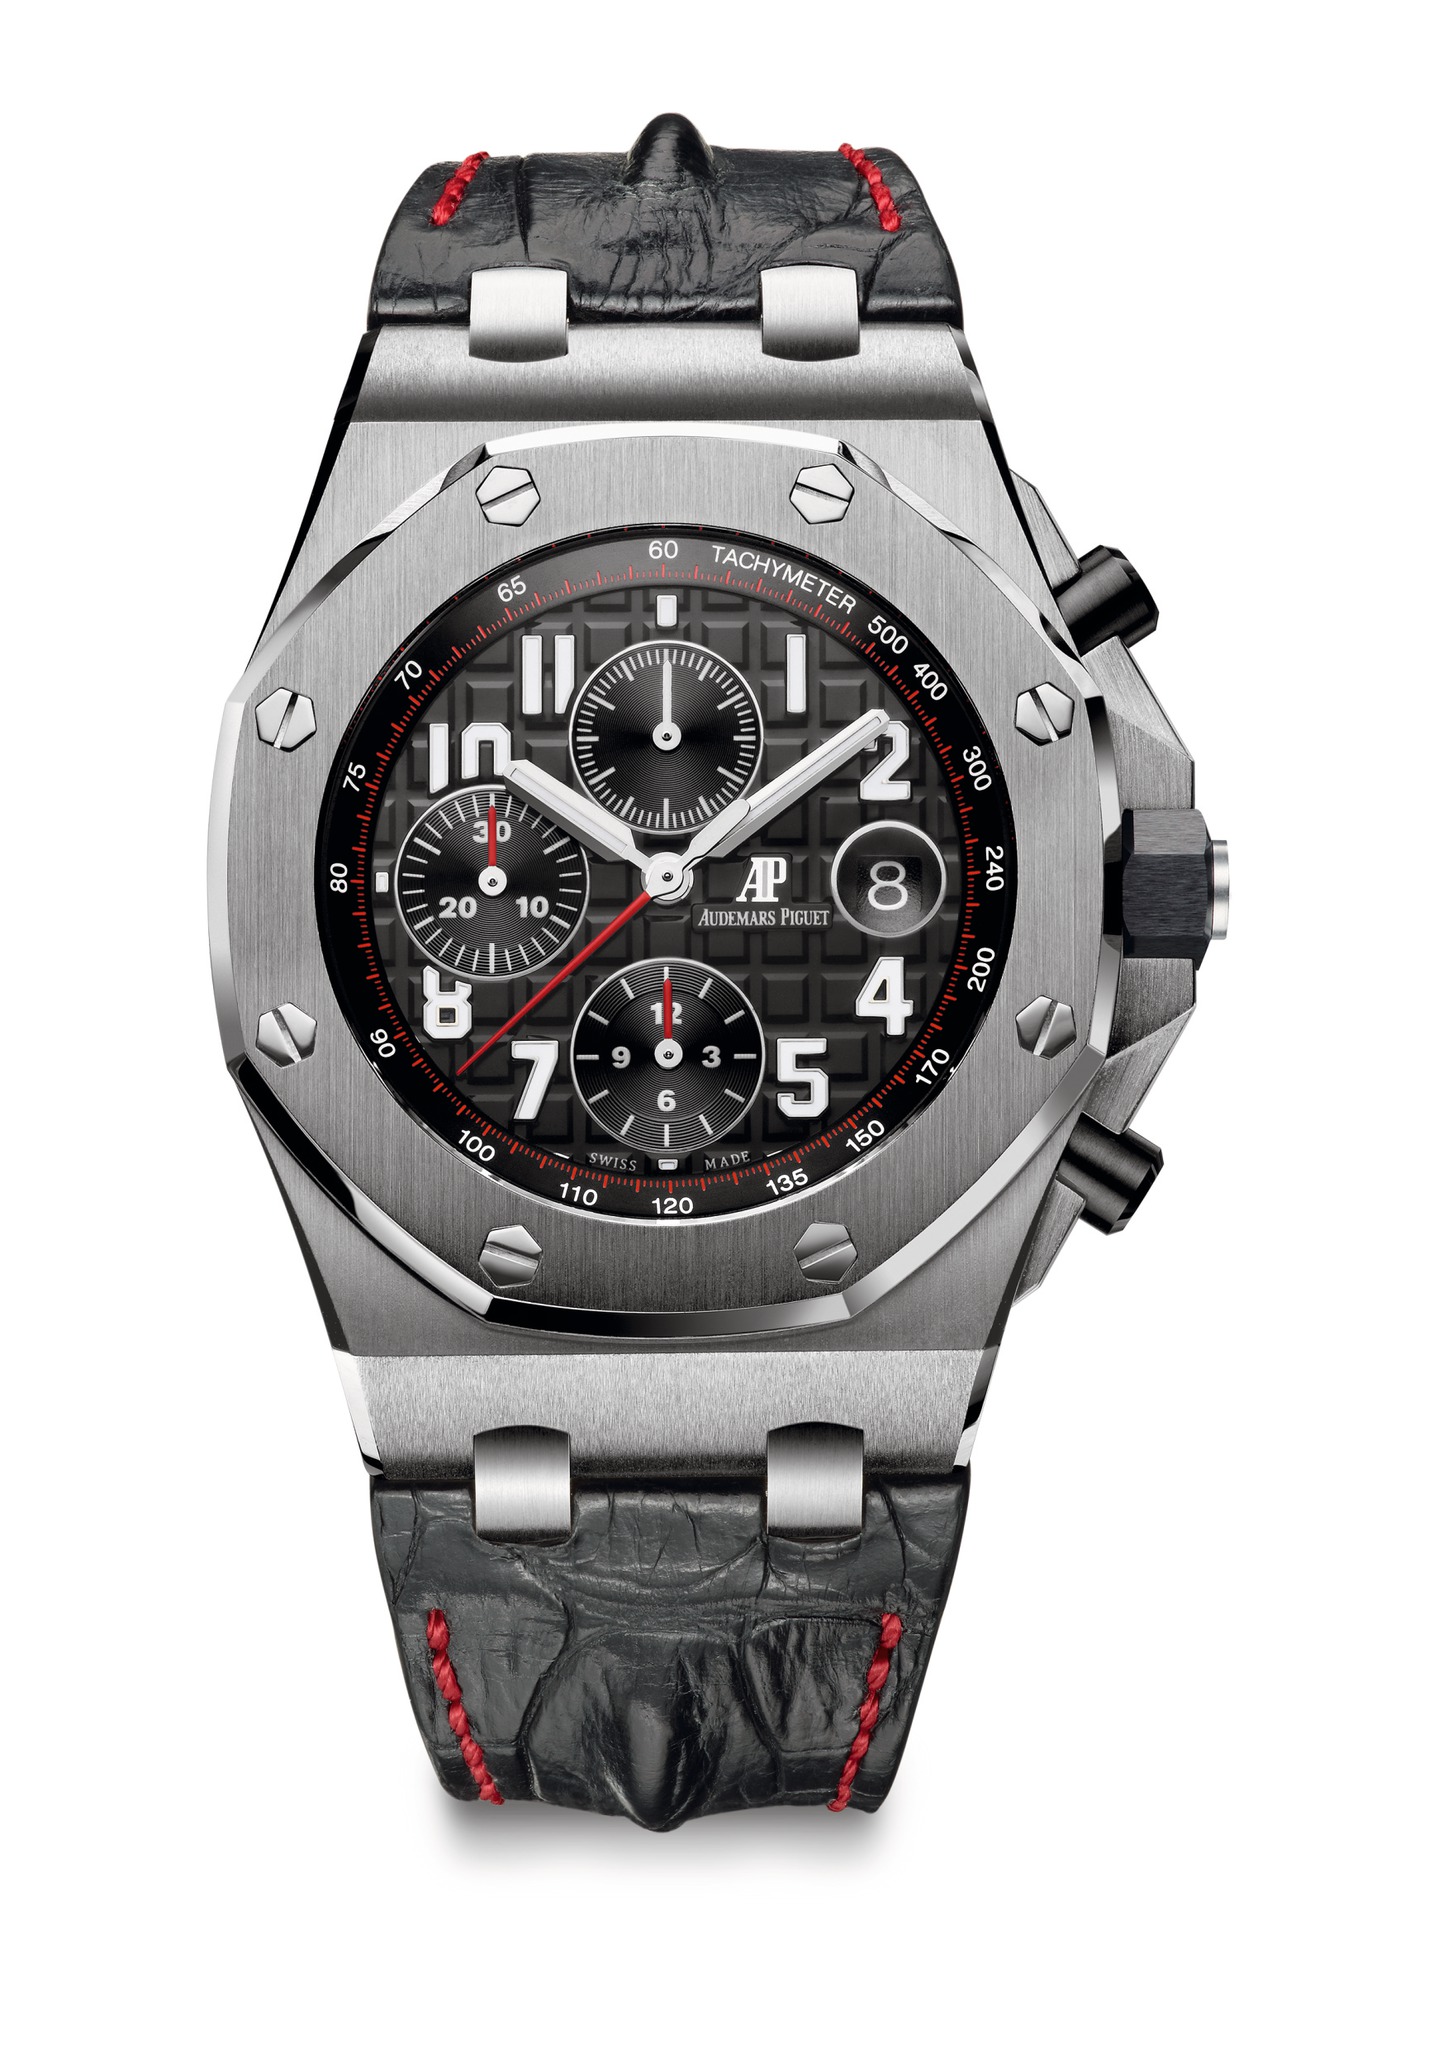 Audemars Piguet New Royal Oak Offshore Chronograph Steel watch REF: 26470ST.OO.A101CR.01